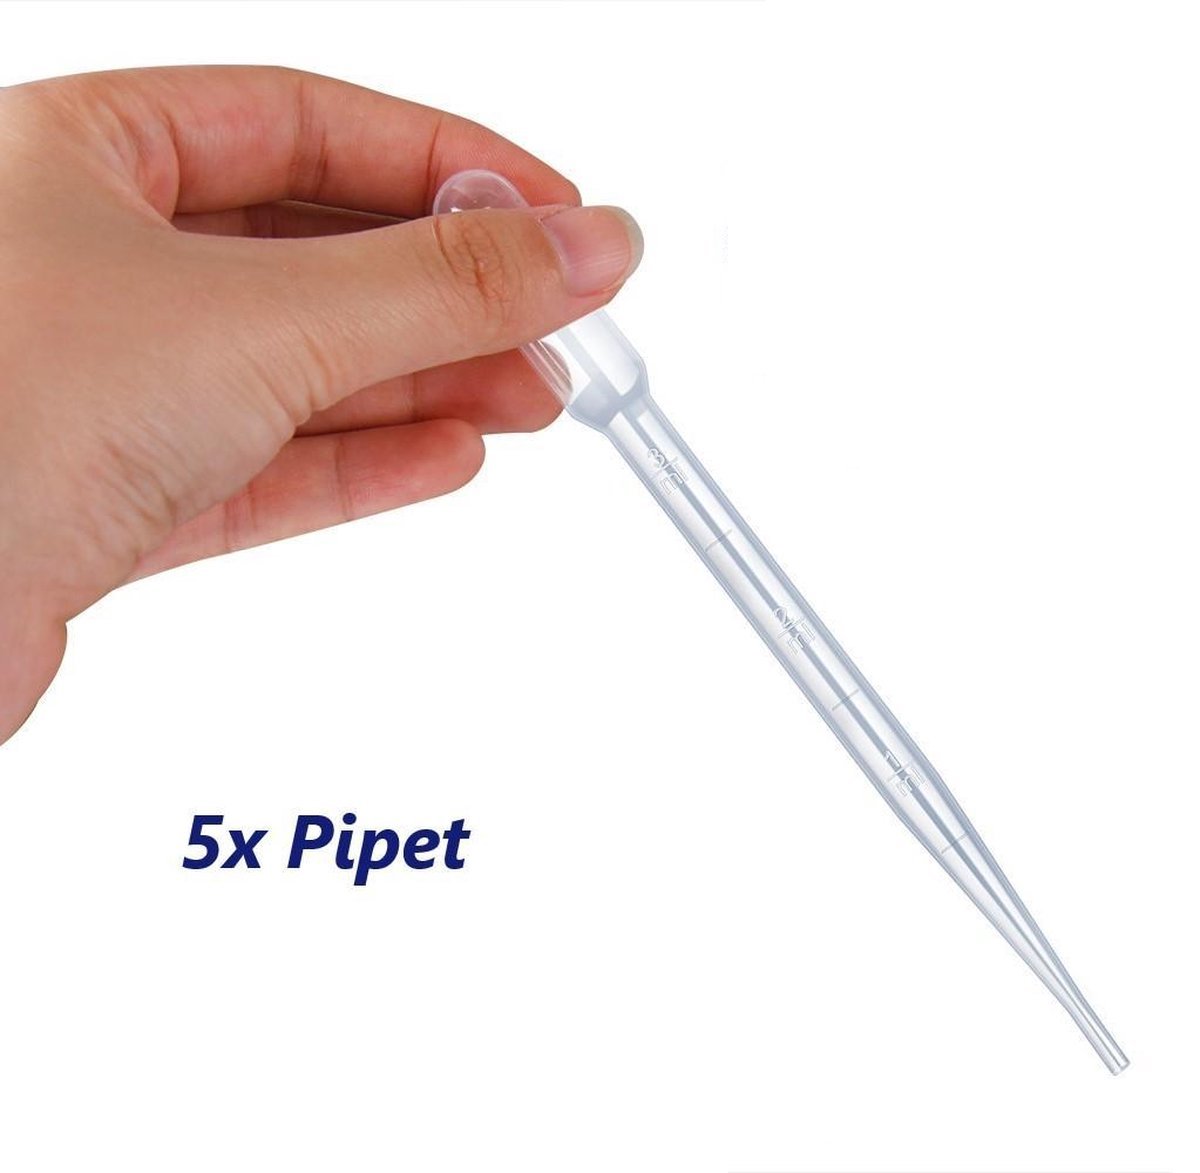 5 stuks pipet voor vloeistoffen - 3ml - pipet voor vloeistoffen - doseerpipet - plastic pipet - pasteur pipet - whisky pipet